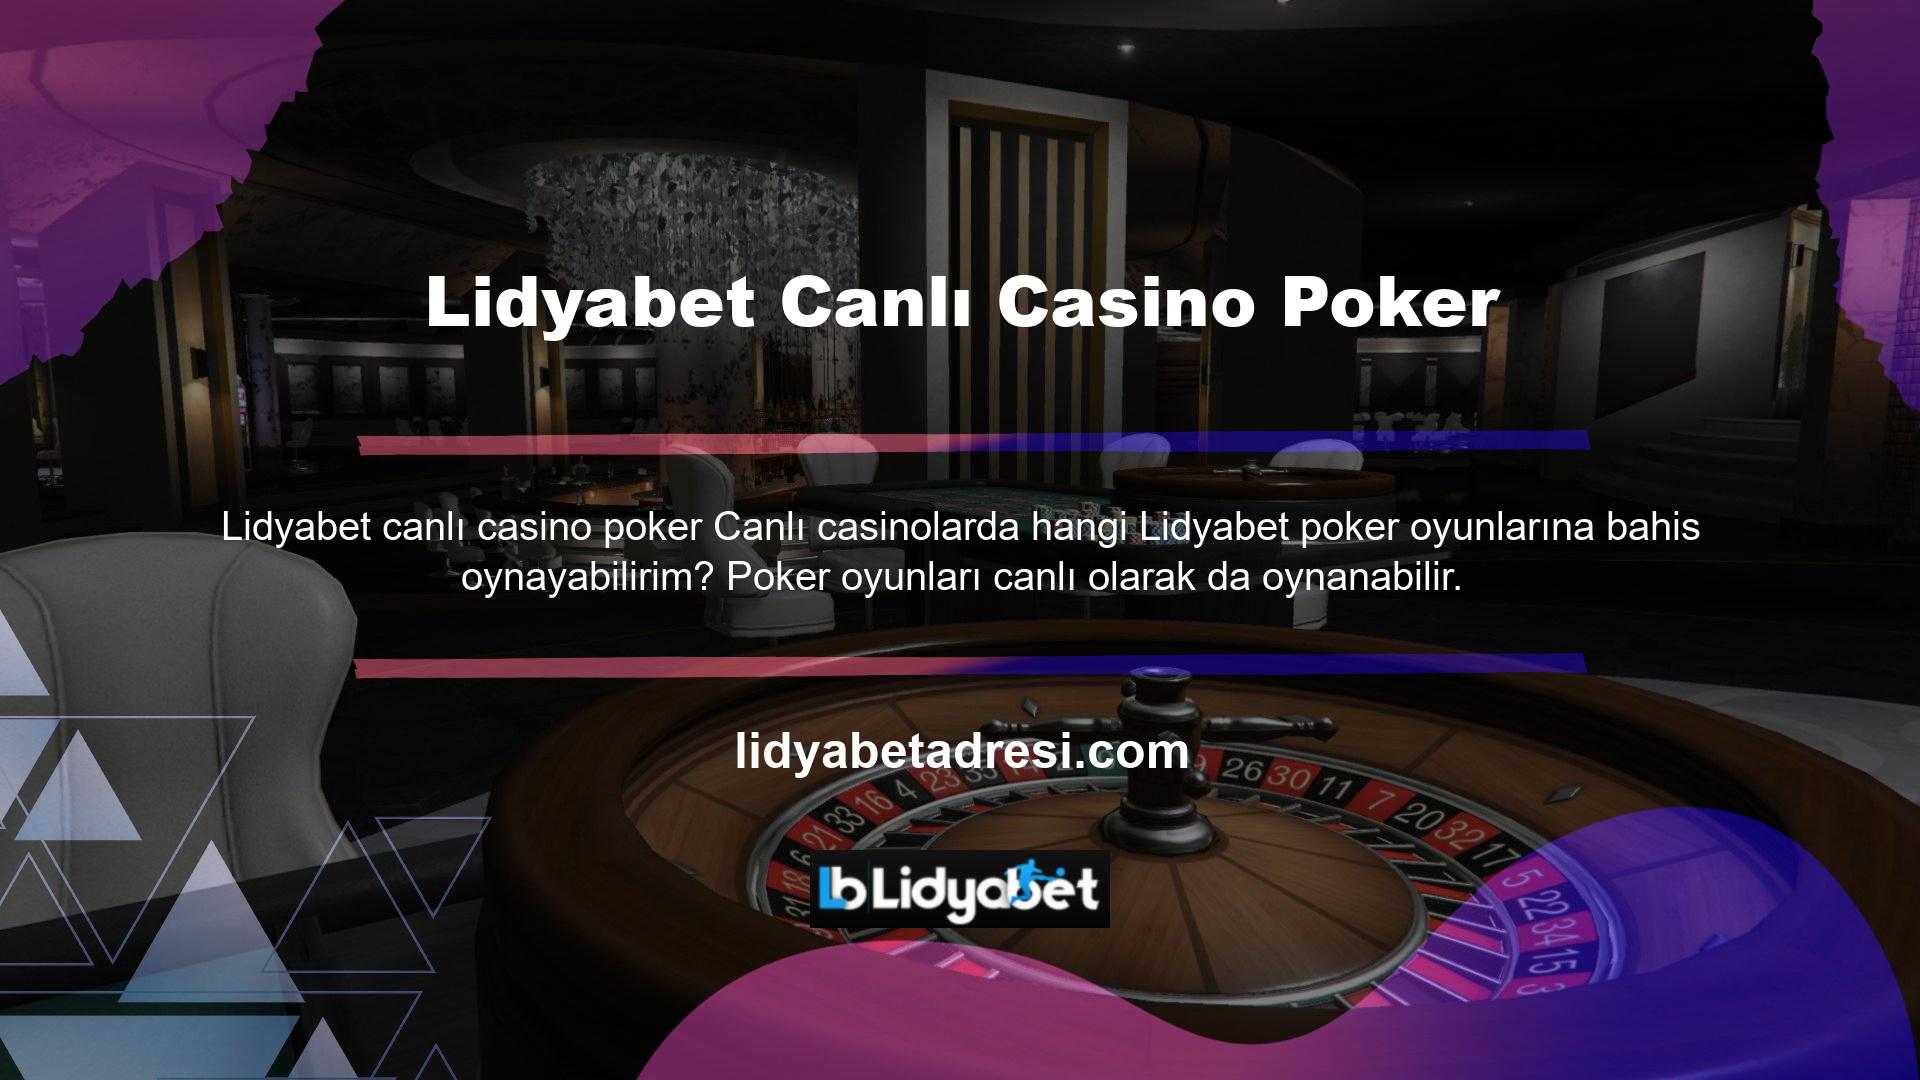 Canlı Casino Poker Oyunları seçeneği, en ünlü ve popüler poker masalarını görmenizi sağlar